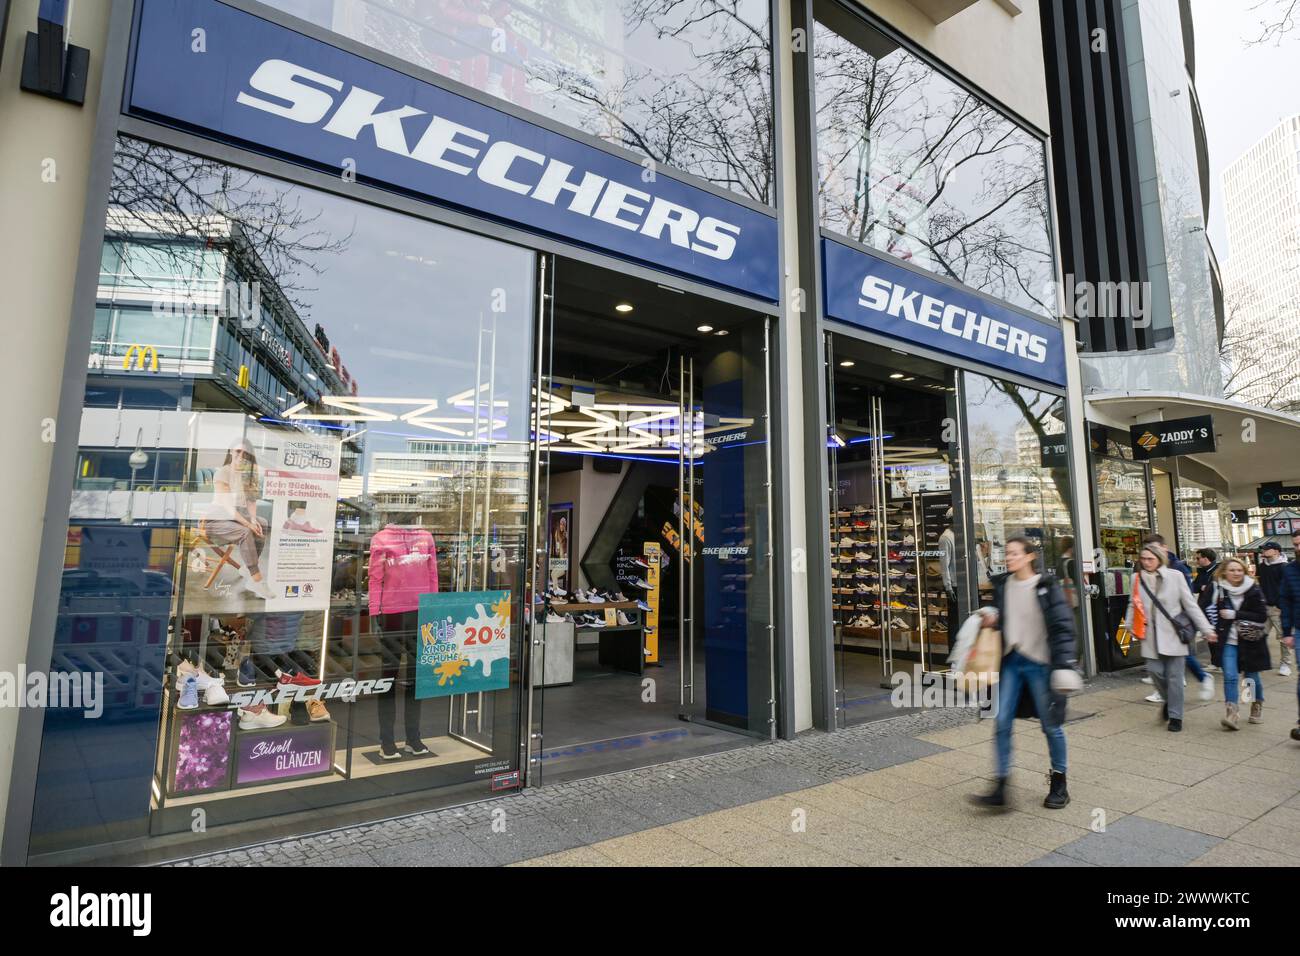 Skechers Sportschuhe, Geschäft, Tauentzienstraße, Charlottenburg, Berlin, Deutschland Stock Photo